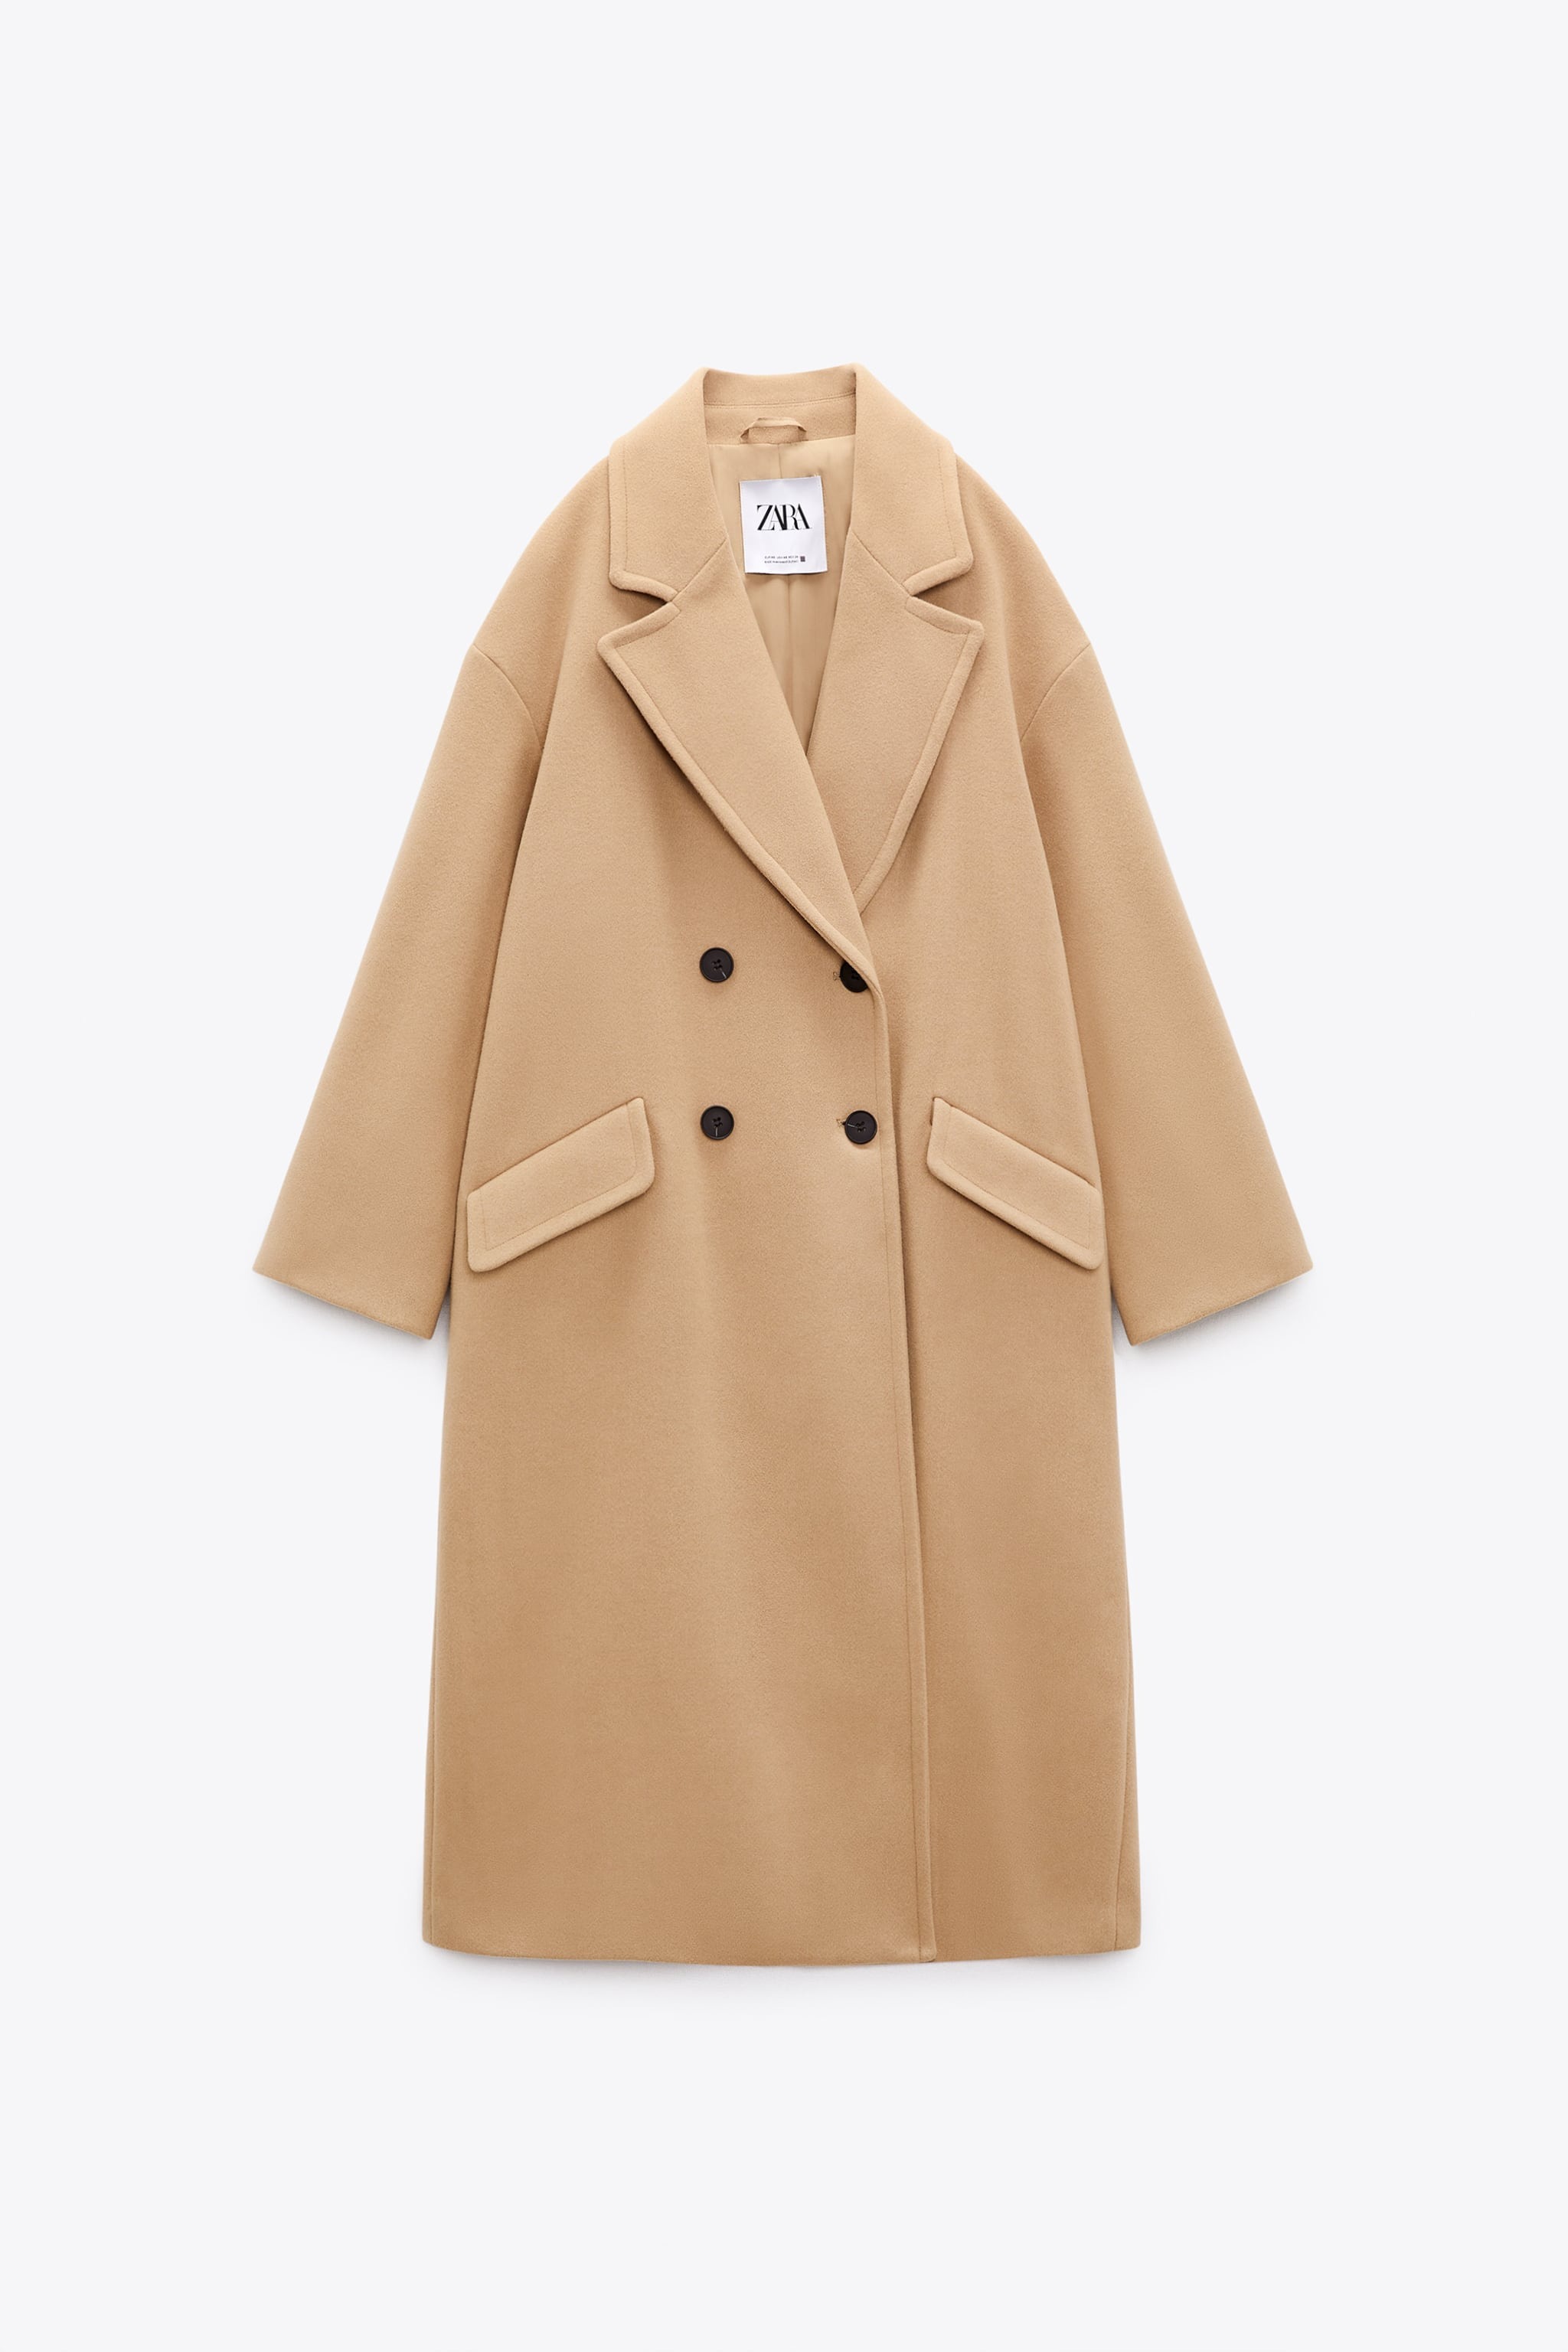 Zara Oversized Coat